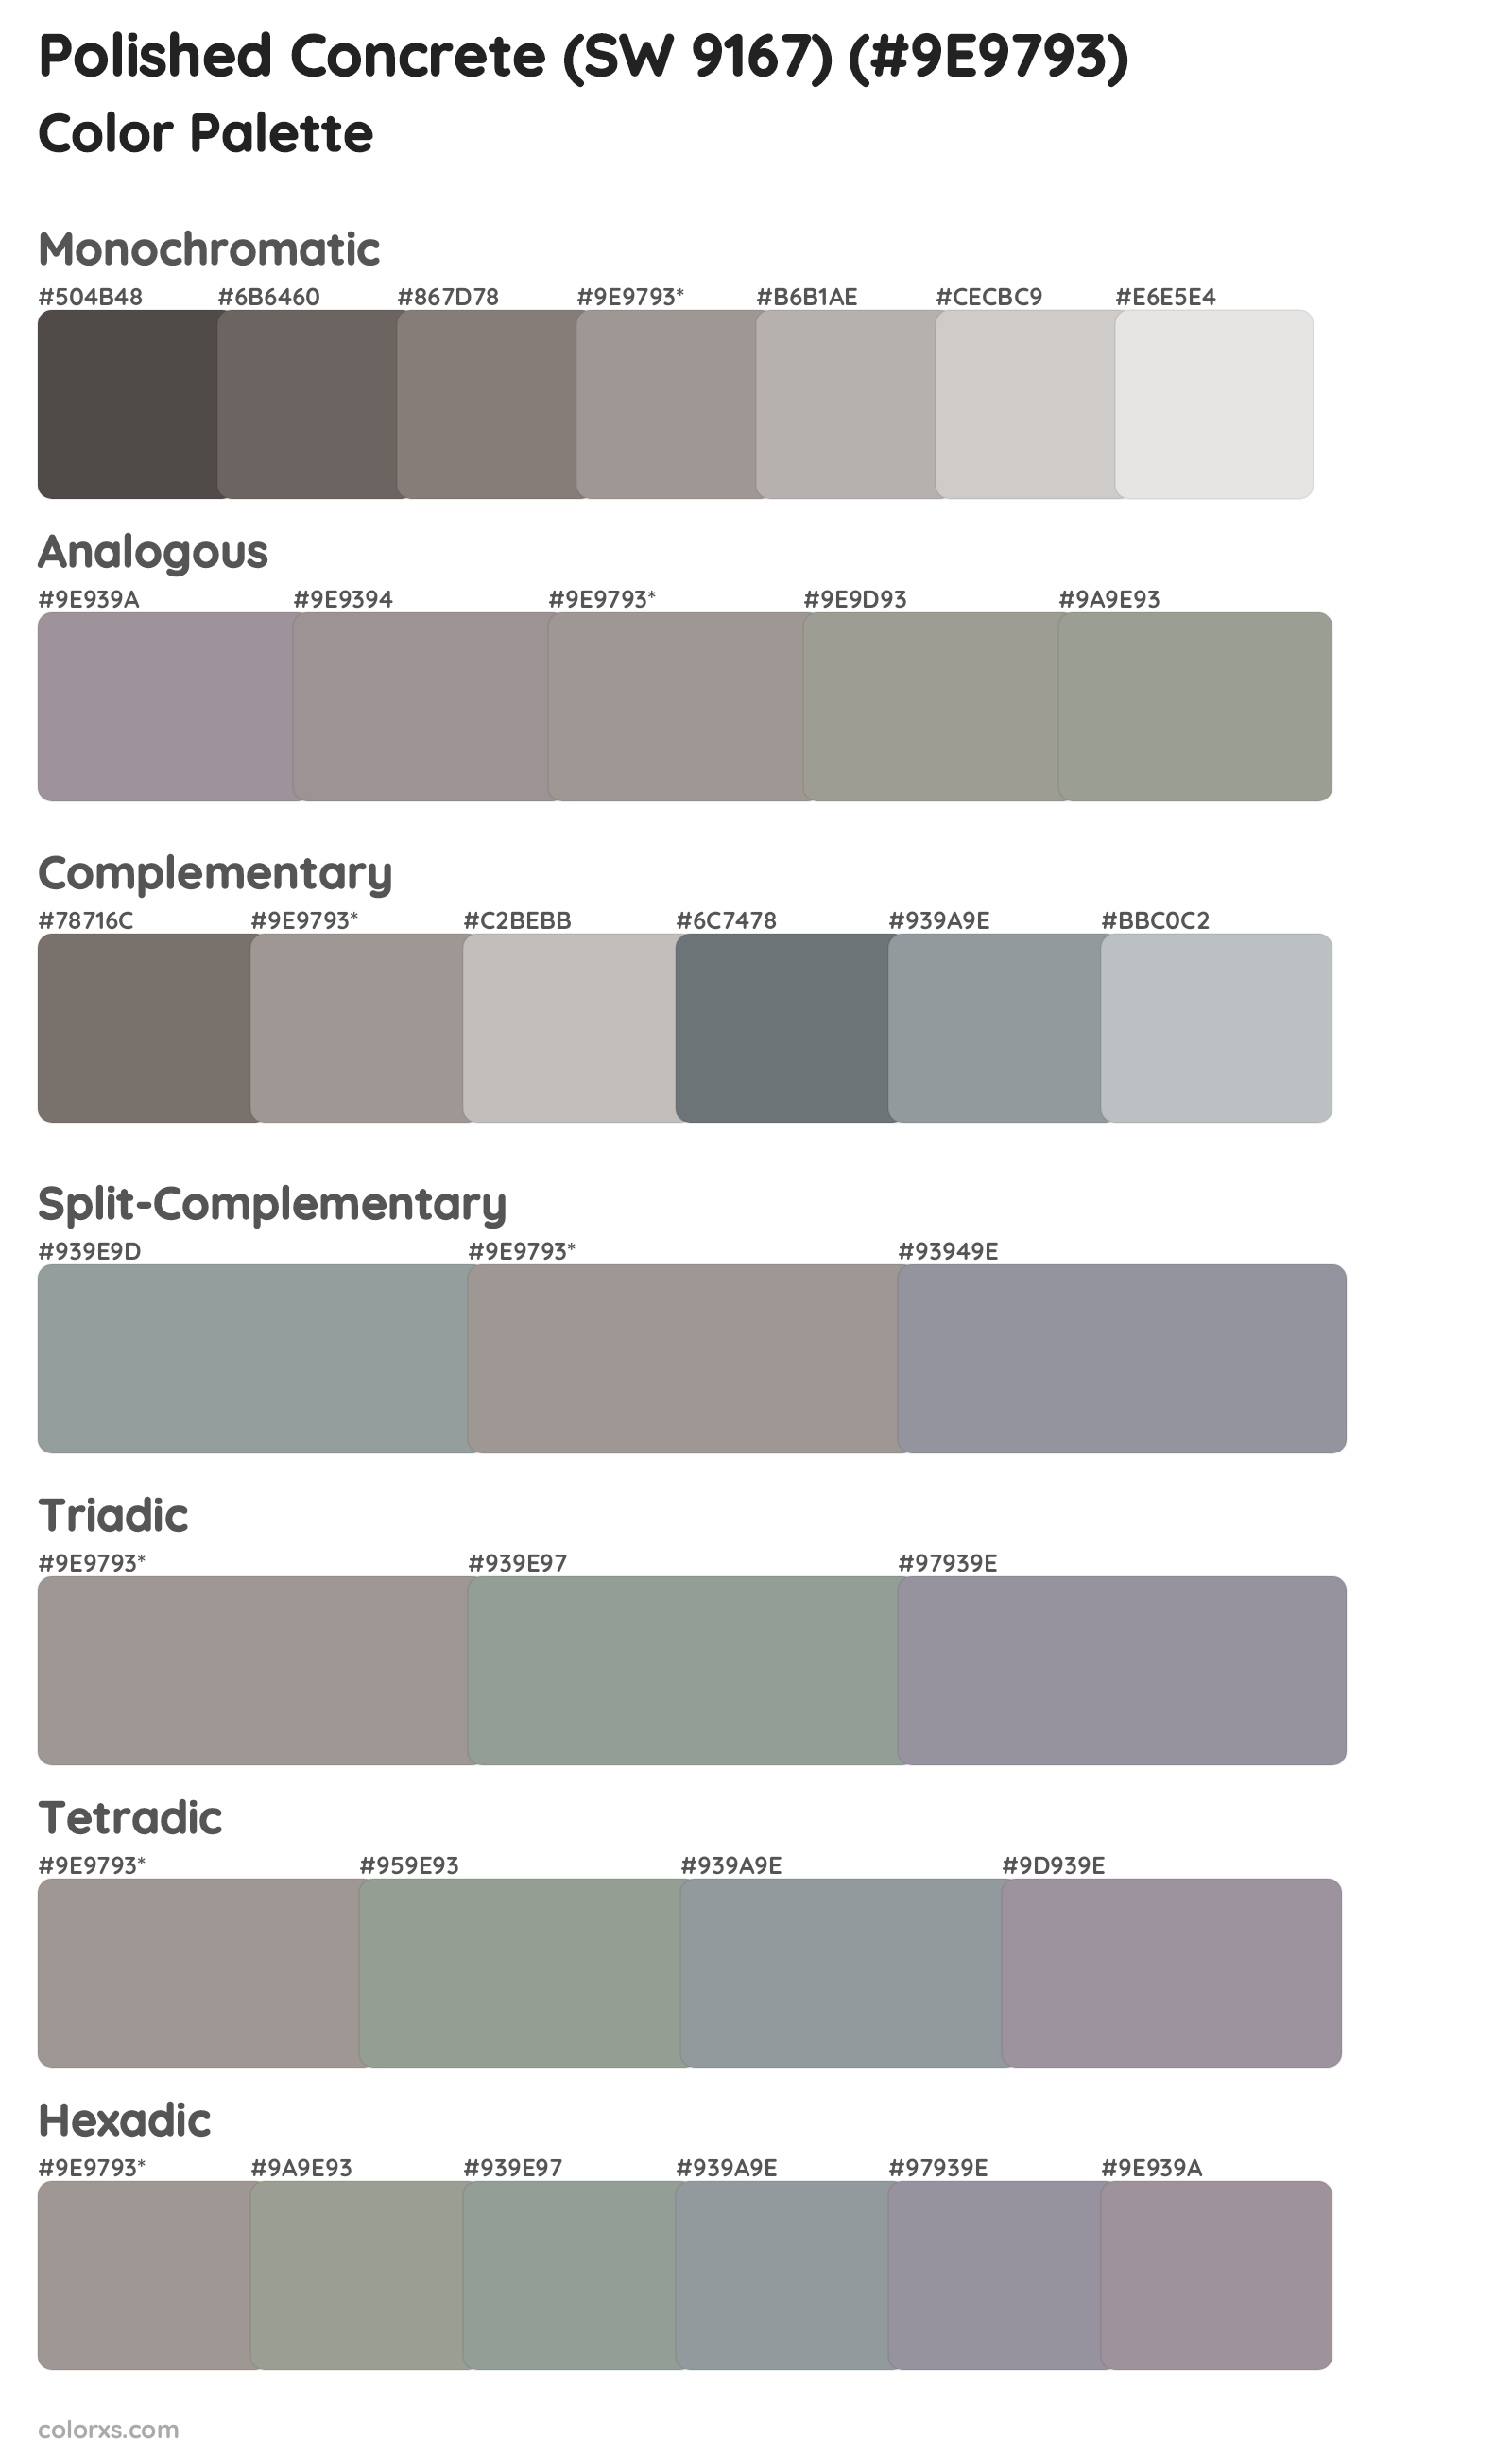 Polished Concrete (SW 9167) Color Scheme Palettes